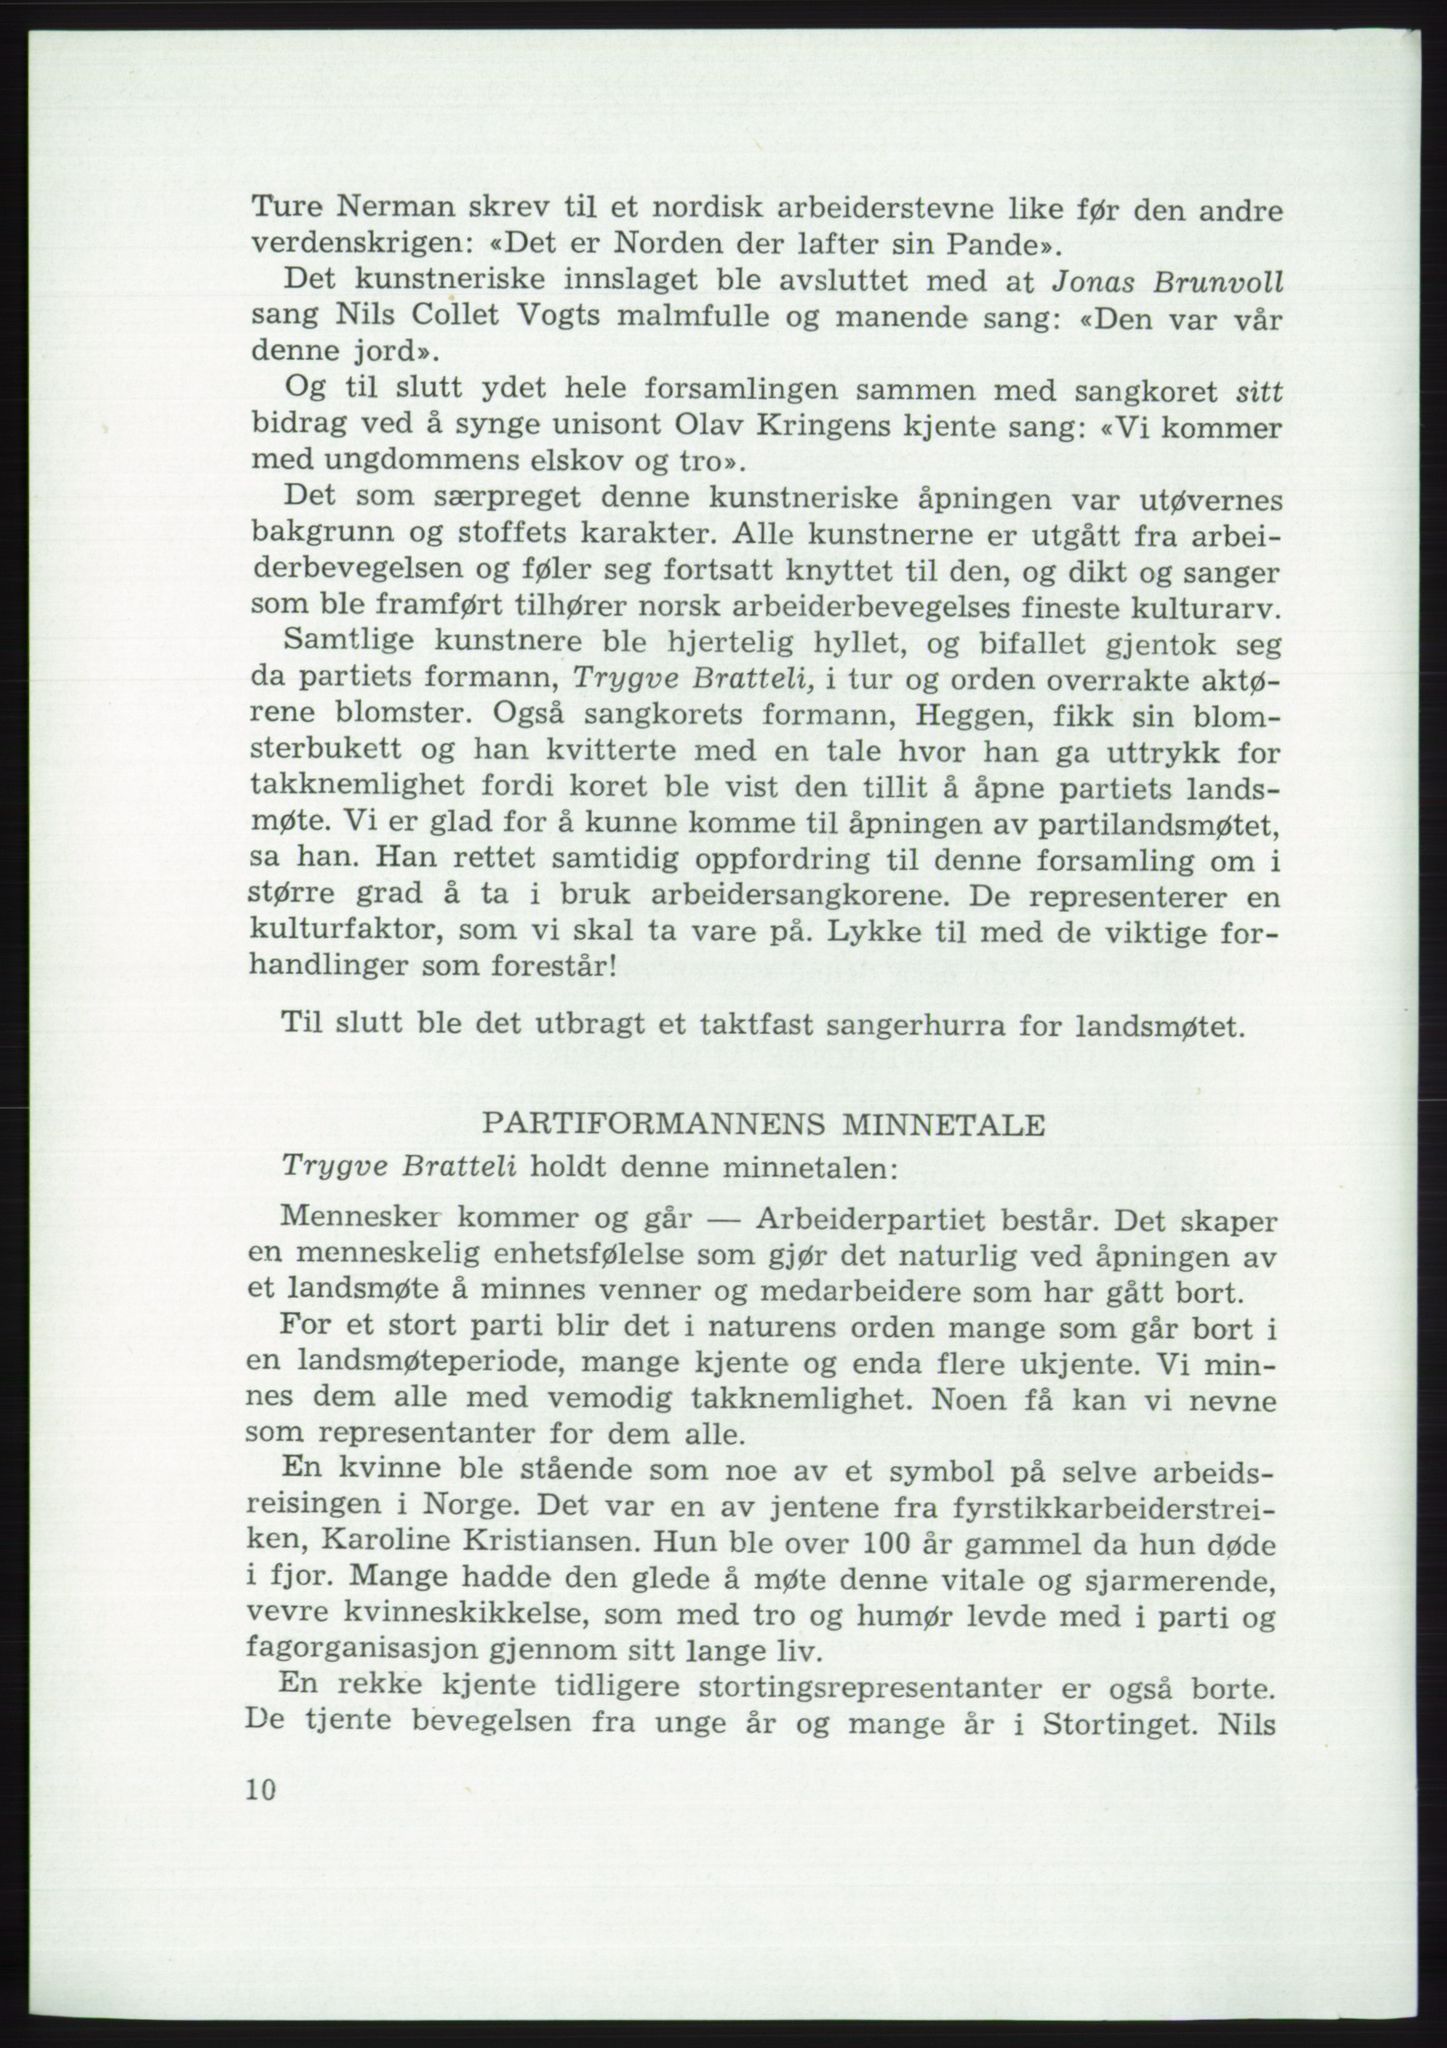 Det norske Arbeiderparti - publikasjoner, AAB/-/-/-: Protokoll over forhandlingene på det 45. ordinære landsmøte 27.-30. mai 1973 i Oslo, 1973, p. 10